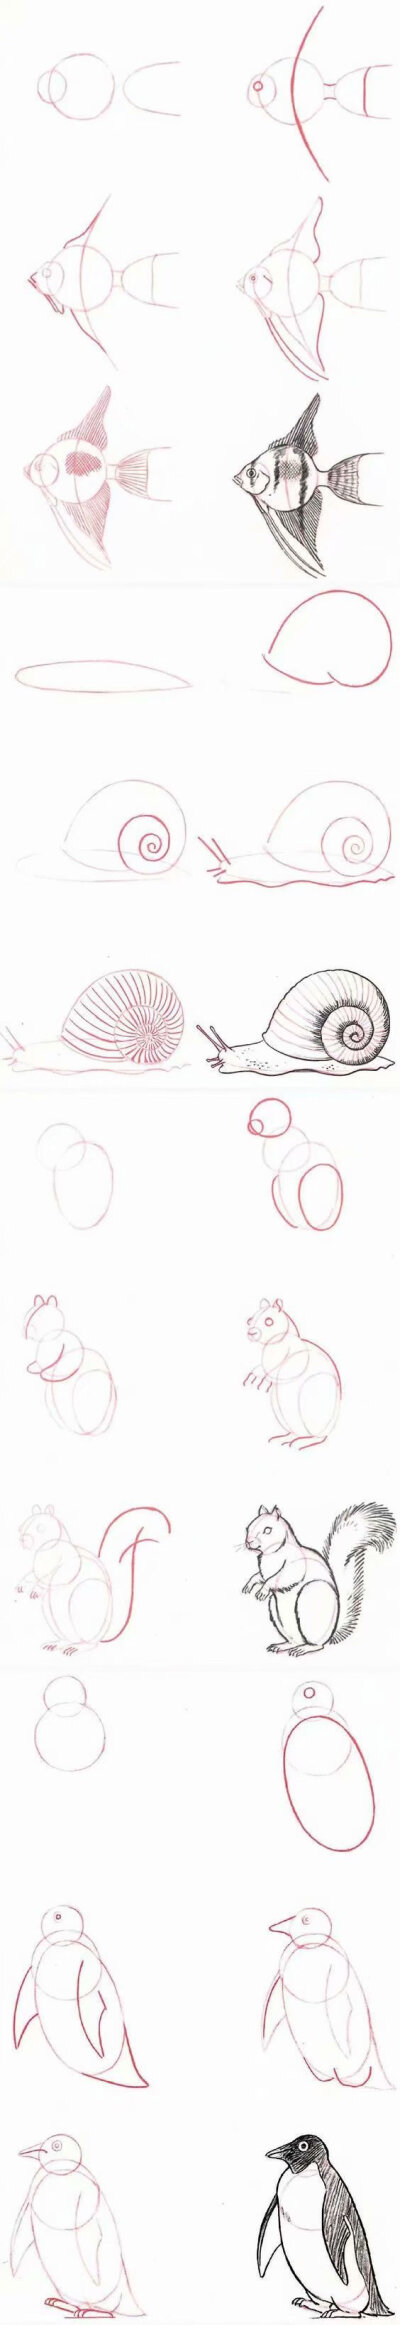 简单易上手的动物画法教程